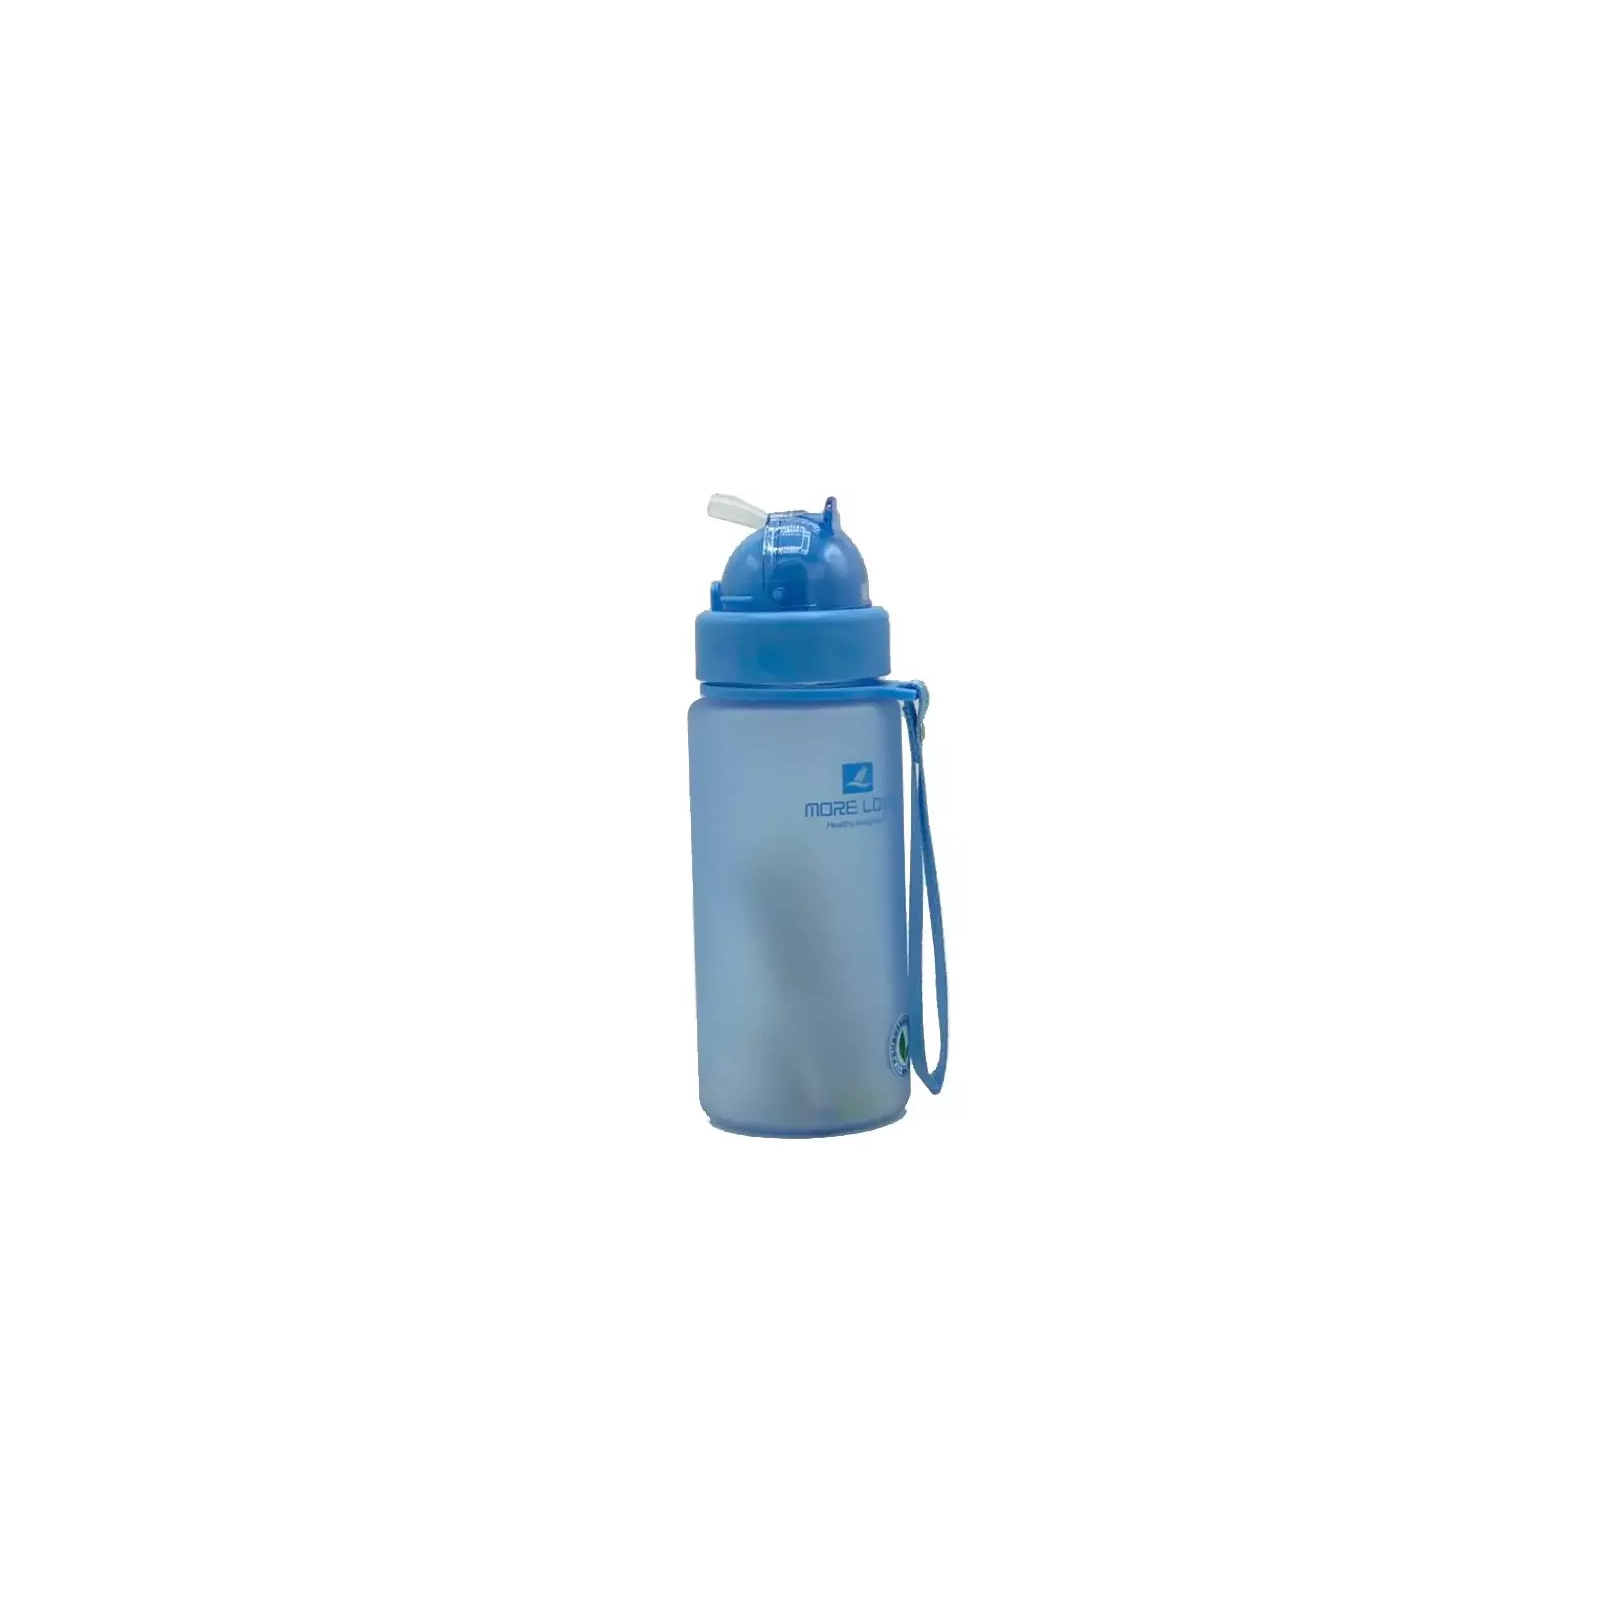 Пляшка для води Casno 400 мл MX-5028 More Love Блакитна з соломинкою (MX-5028_Blue)